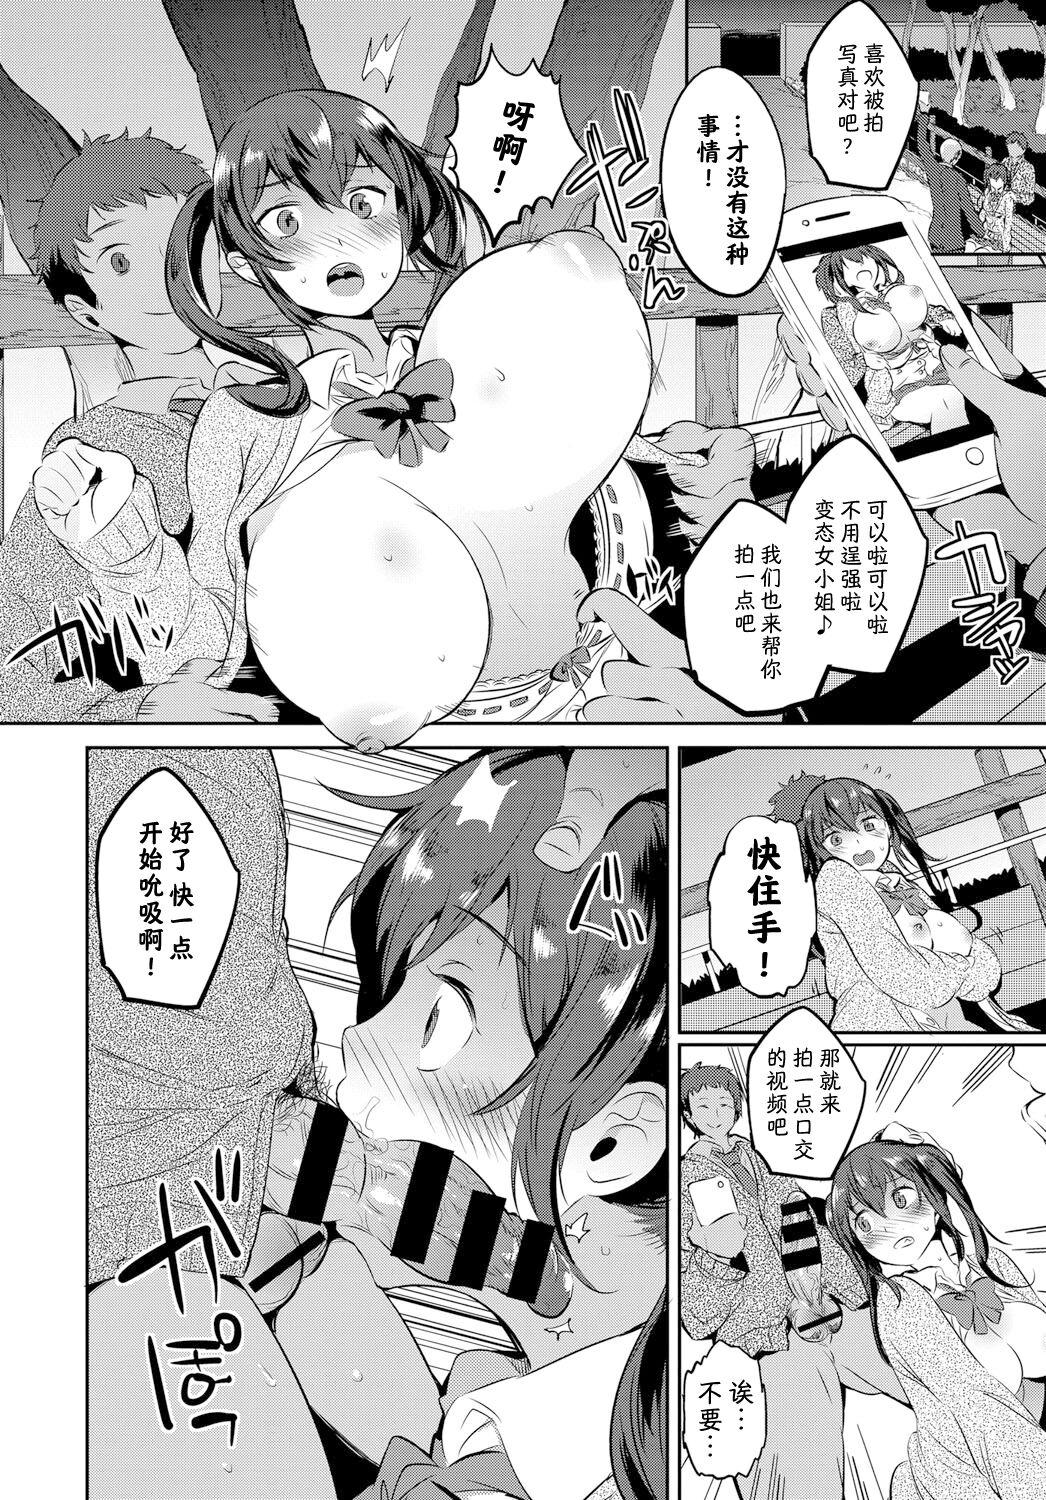 Curious Jidori Shoujo Blowjobs - Page 3